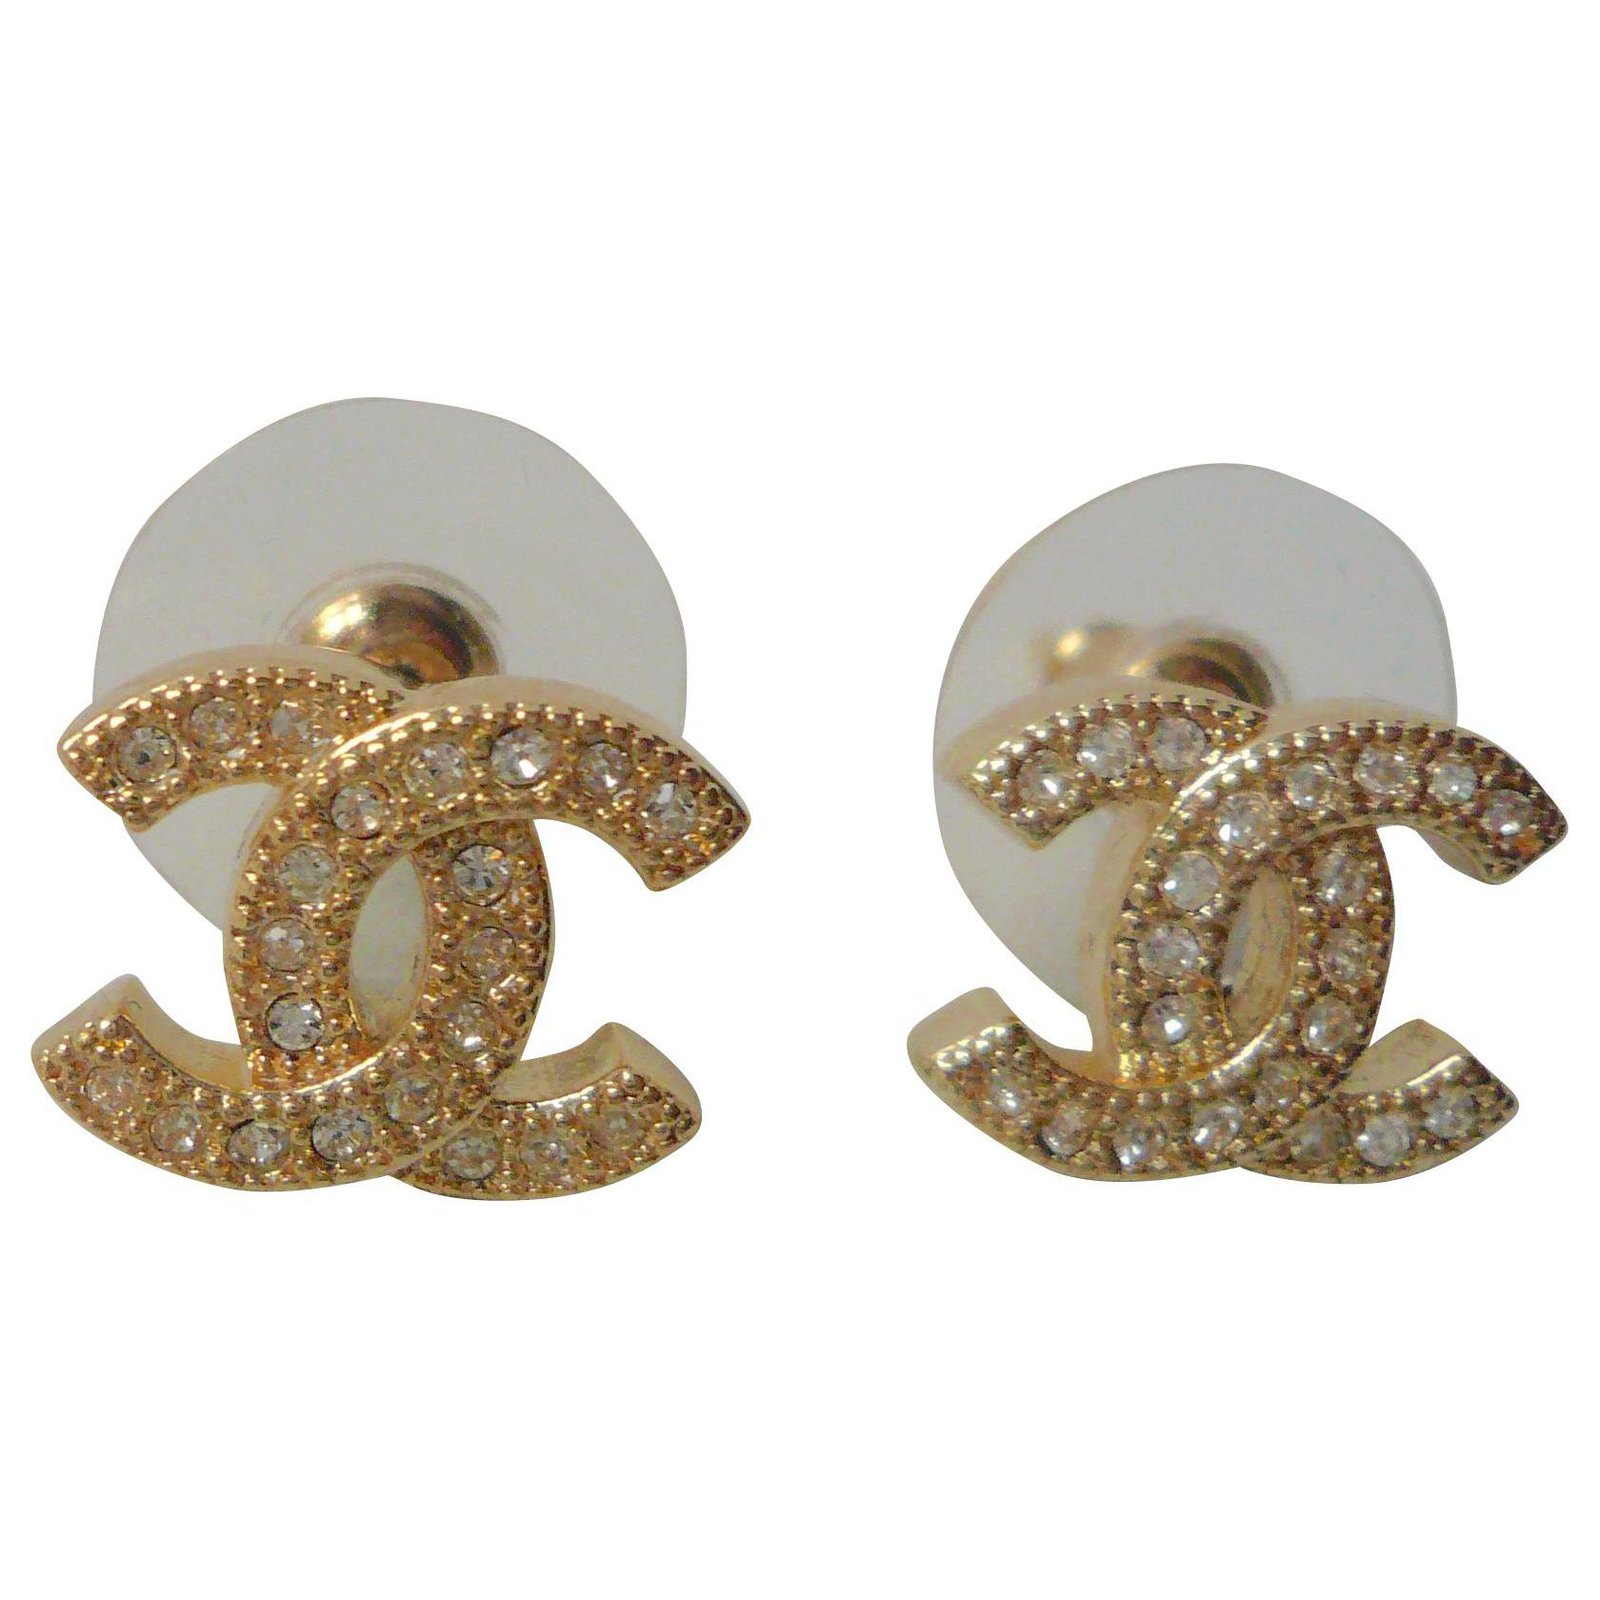 CHANEL New CC motif stud earrings